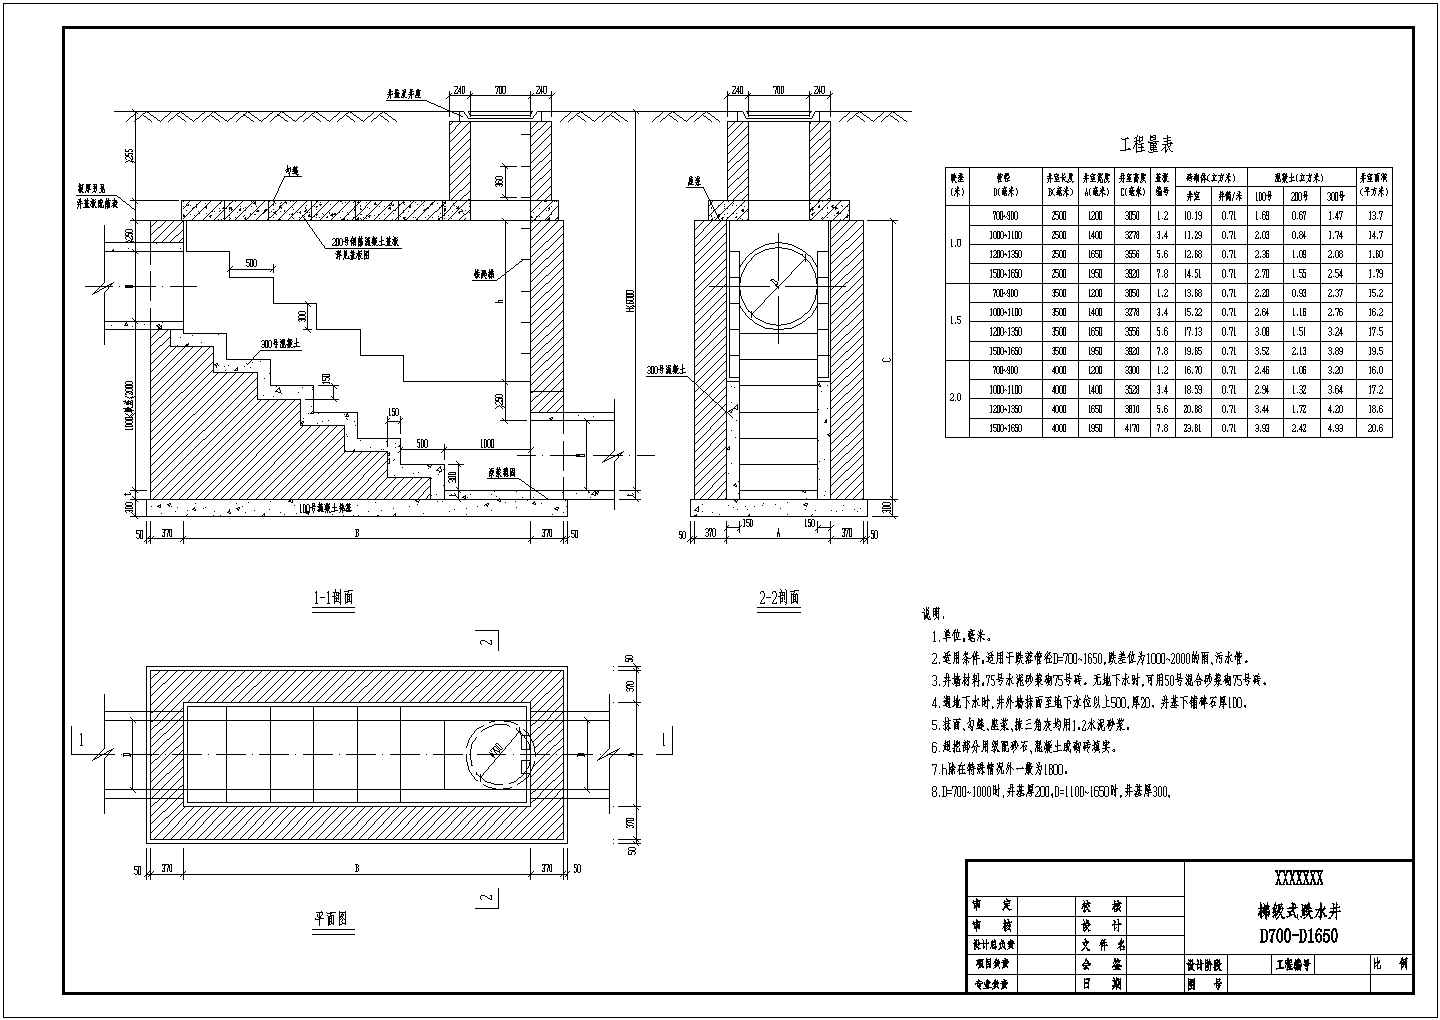 雨水或污水的梯级式跌水井标准设计施工图